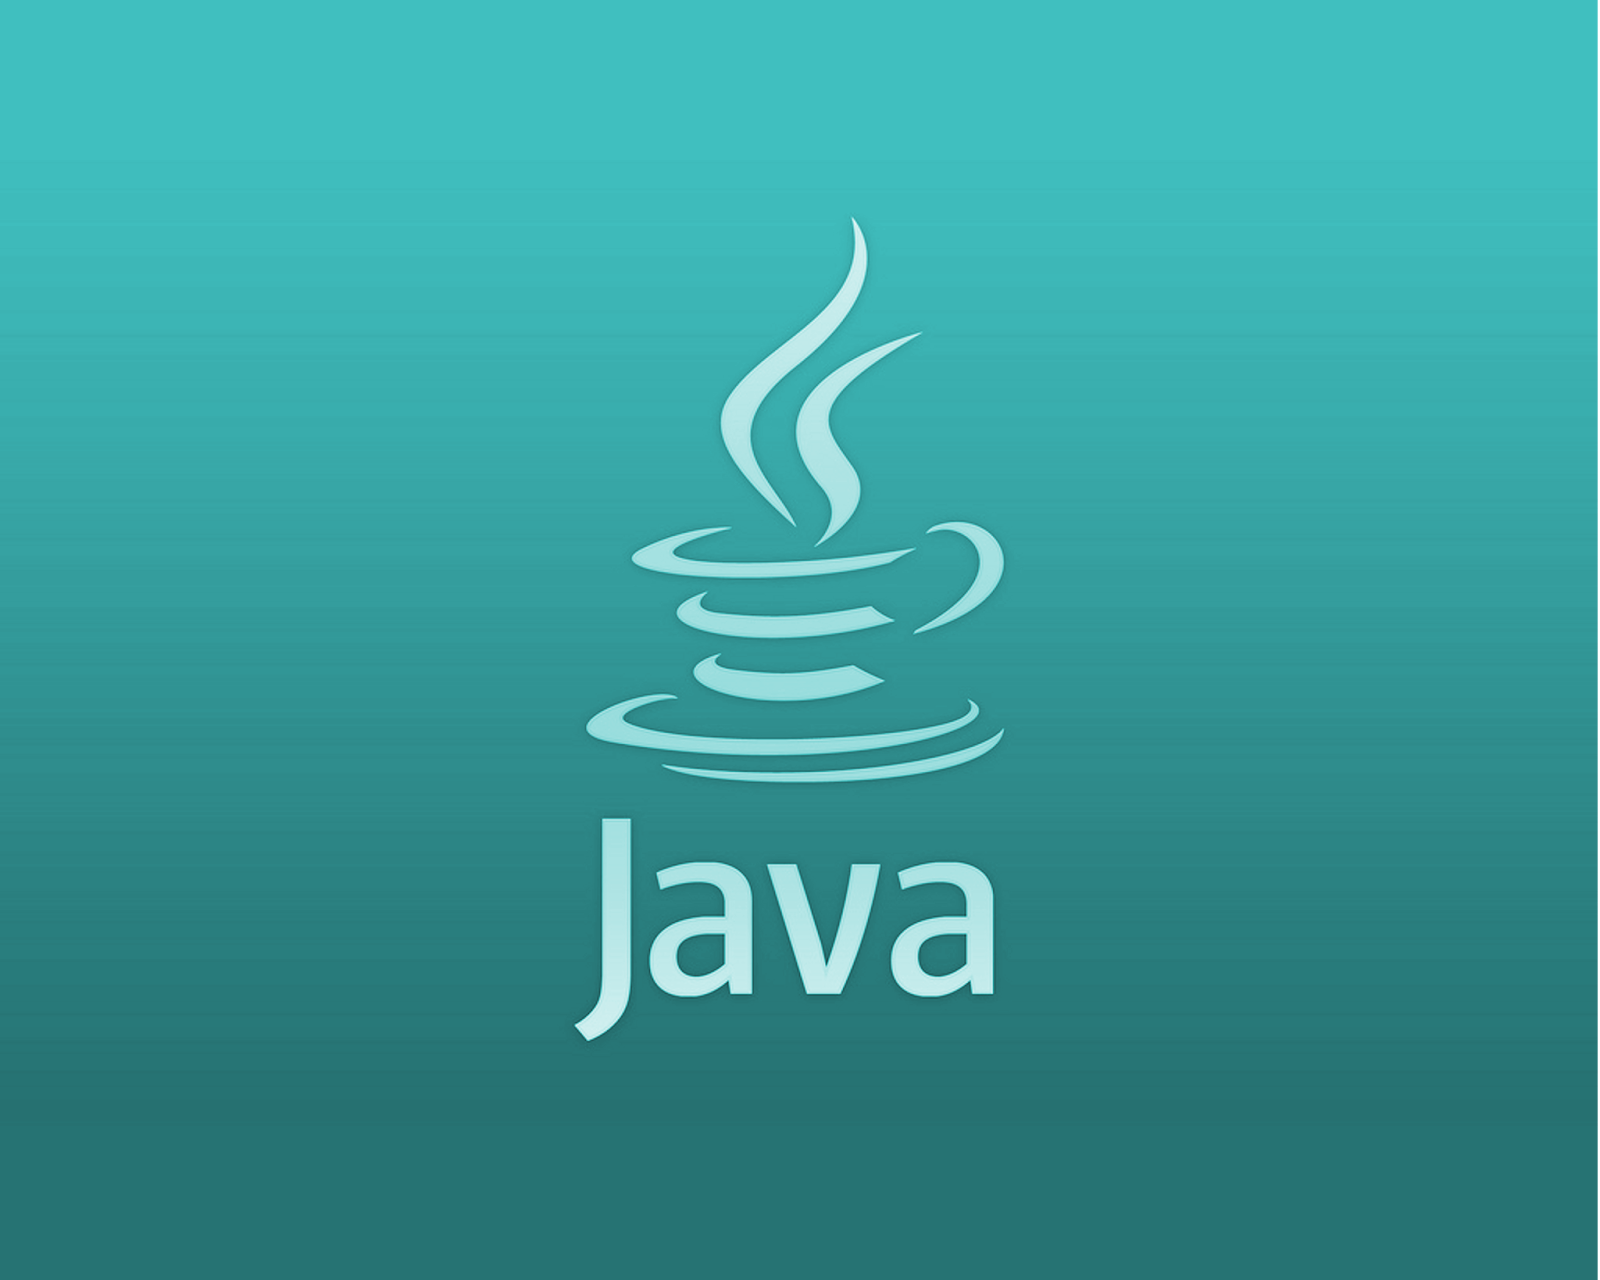 Safer java. Джава язык программирования. Жавалоготип язык программирования. Ява язык программирования. Java язык программирования лого.